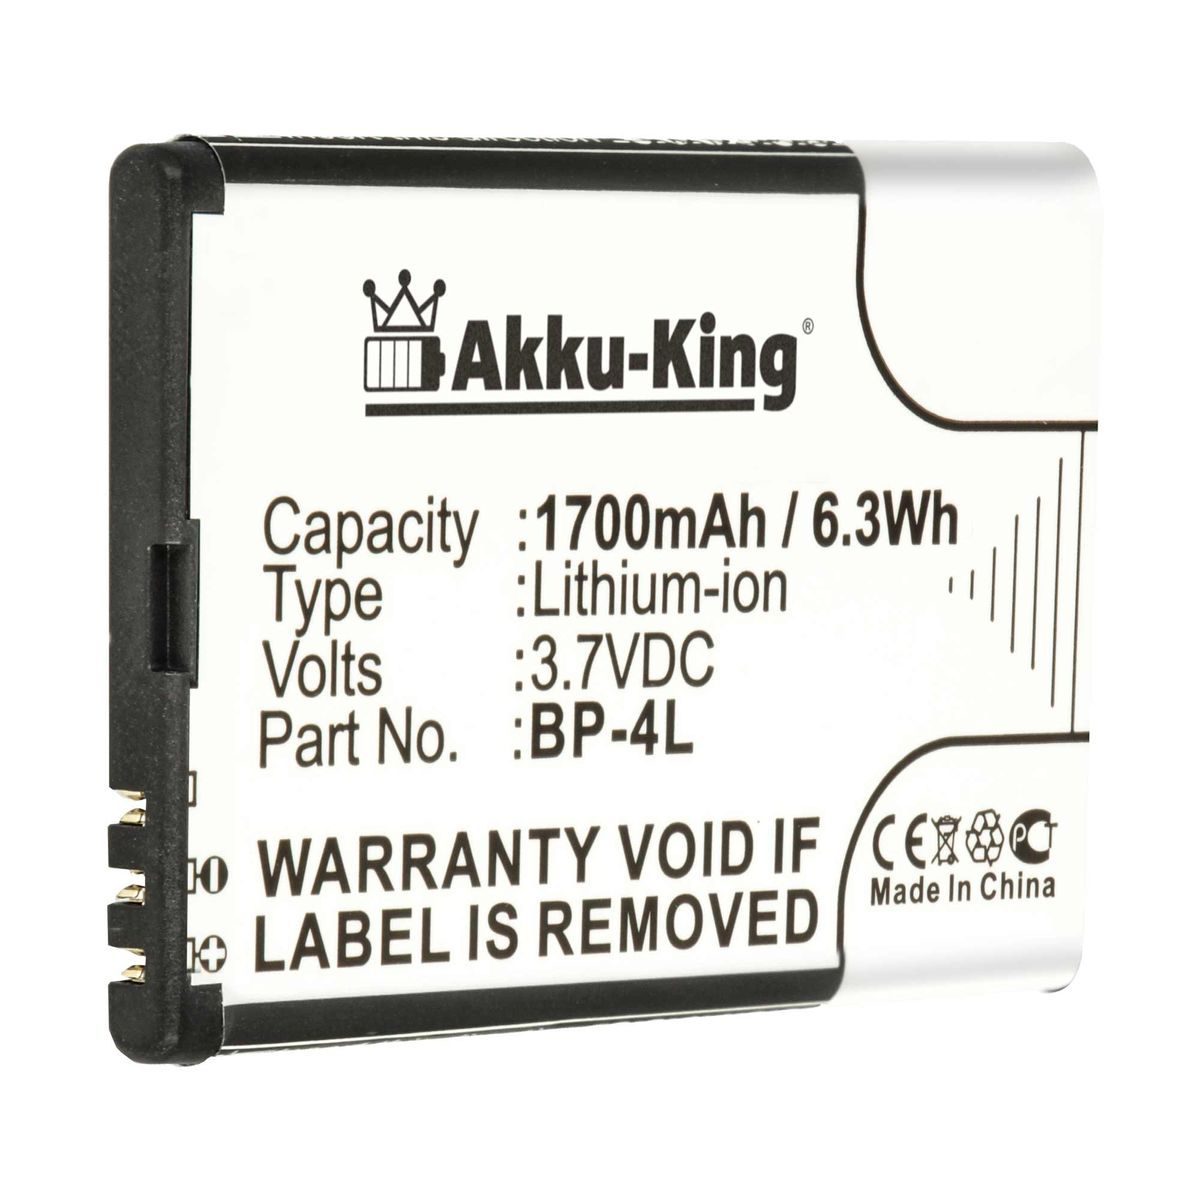 Nokia Li-Ion Akku 1700mAh BP-4L Handy-Akku, 3.7 mit AKKU-KING Volt, kompatibel